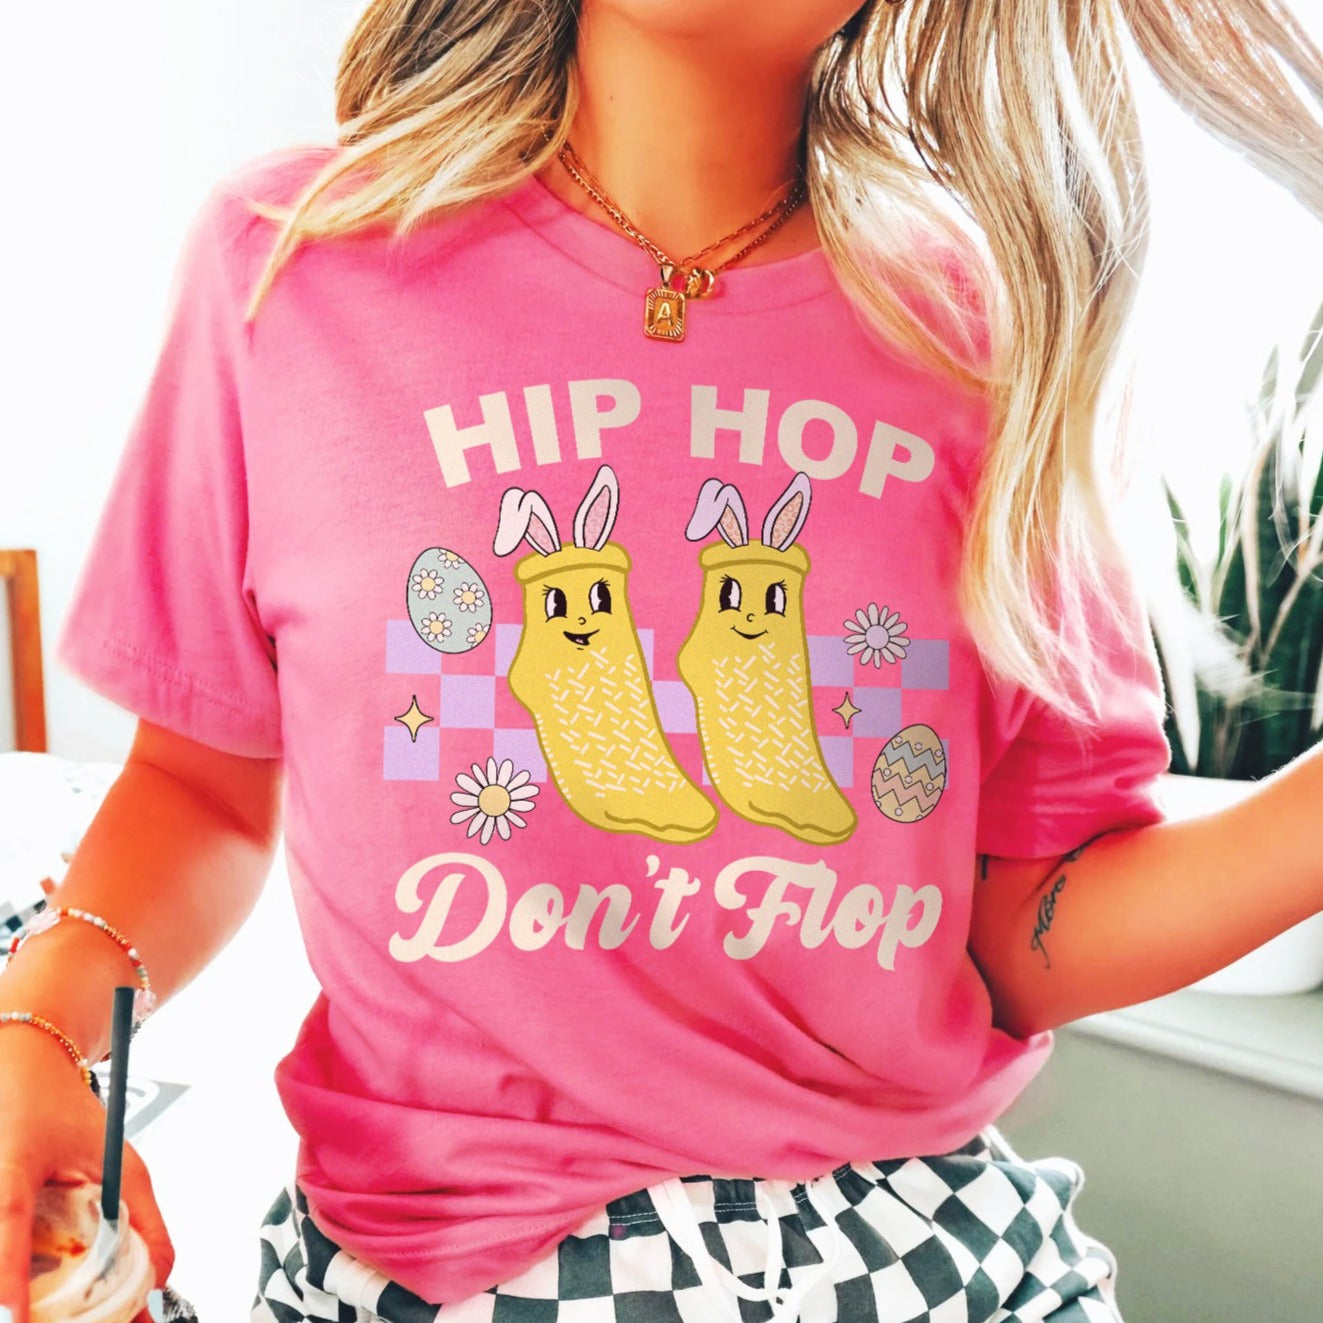 Hip Hop Don't Flop T-Shirt